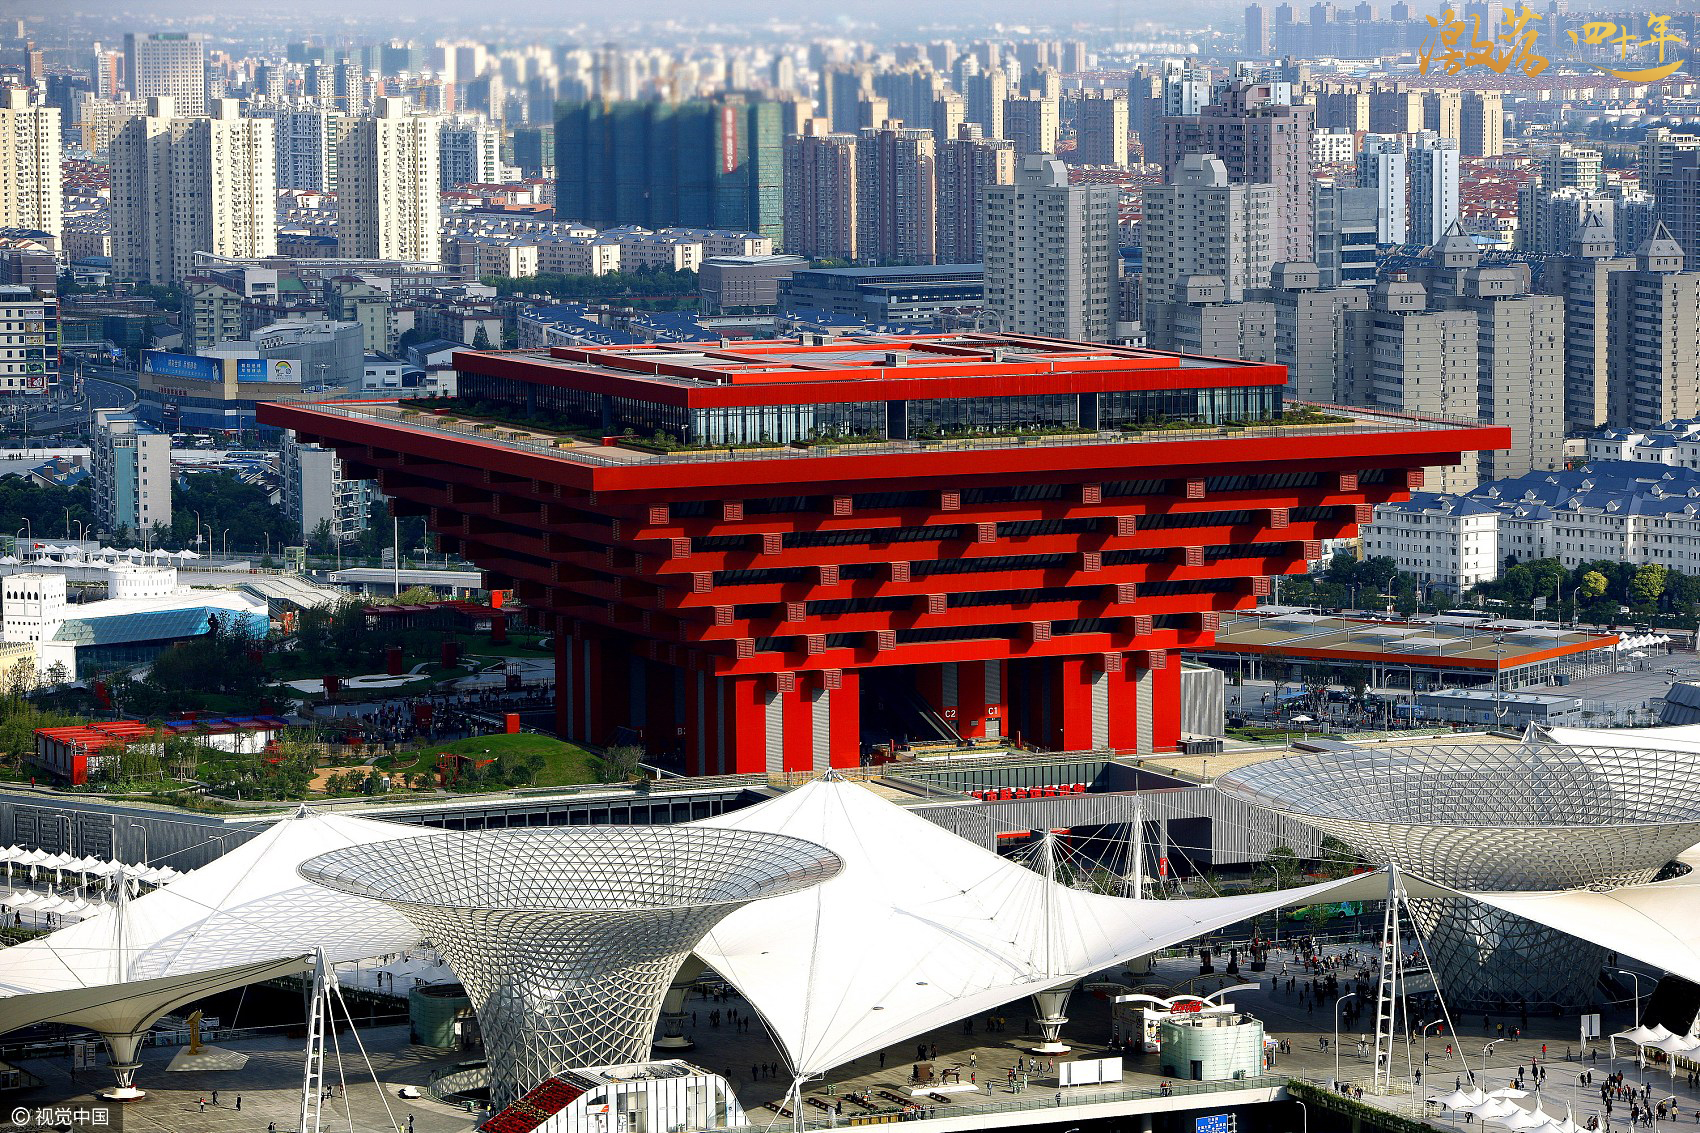 探讨新世纪人类城市生活的伟大盛会2010年,上海世博会以和谐城市的